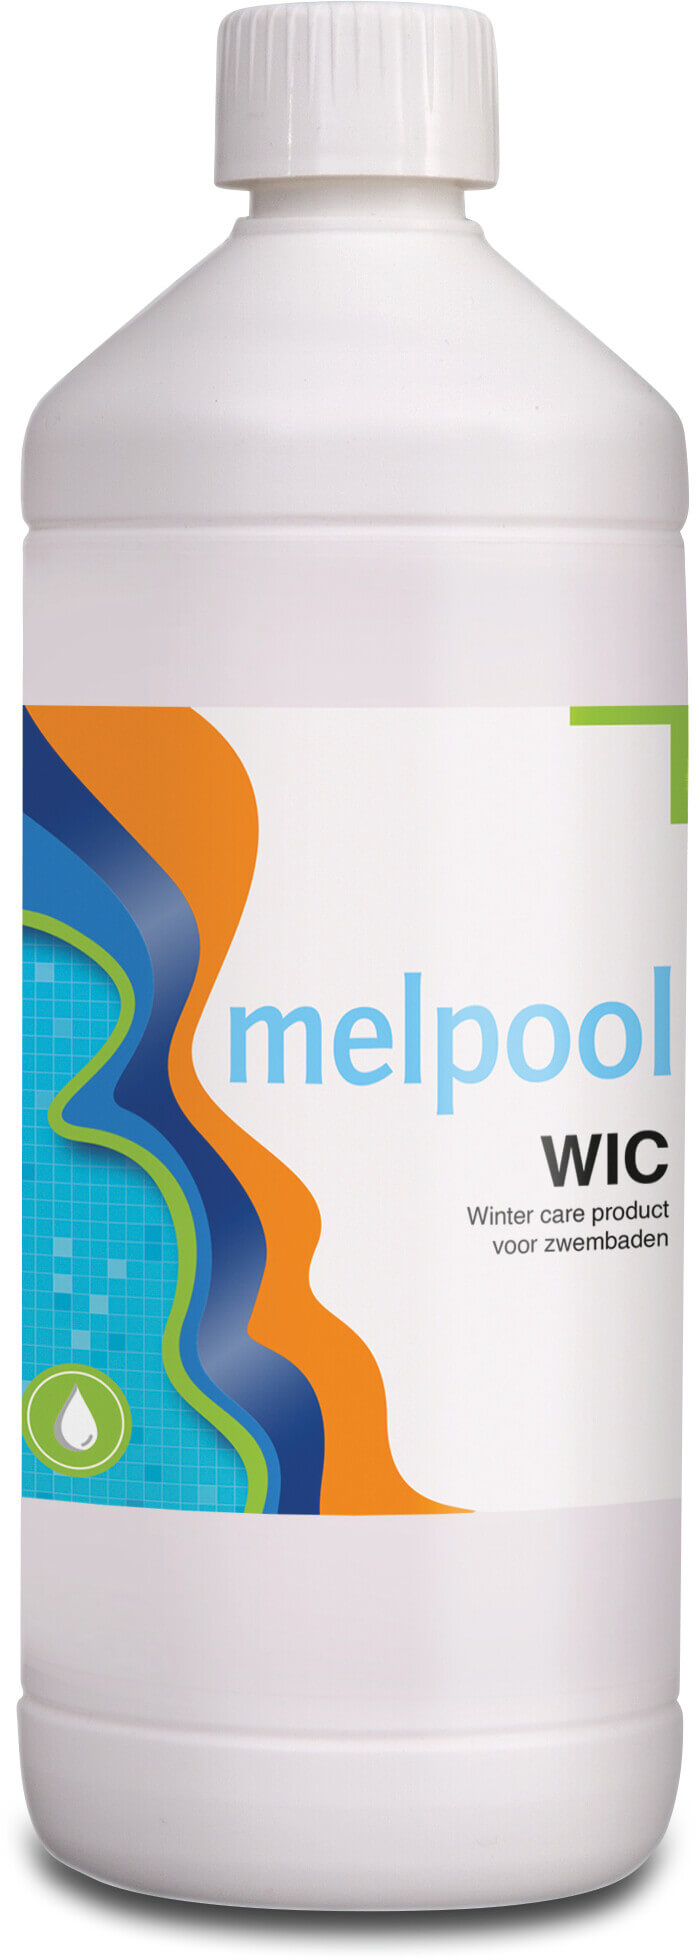 Melpool WIC vintervårdsprodukt för pool 1L